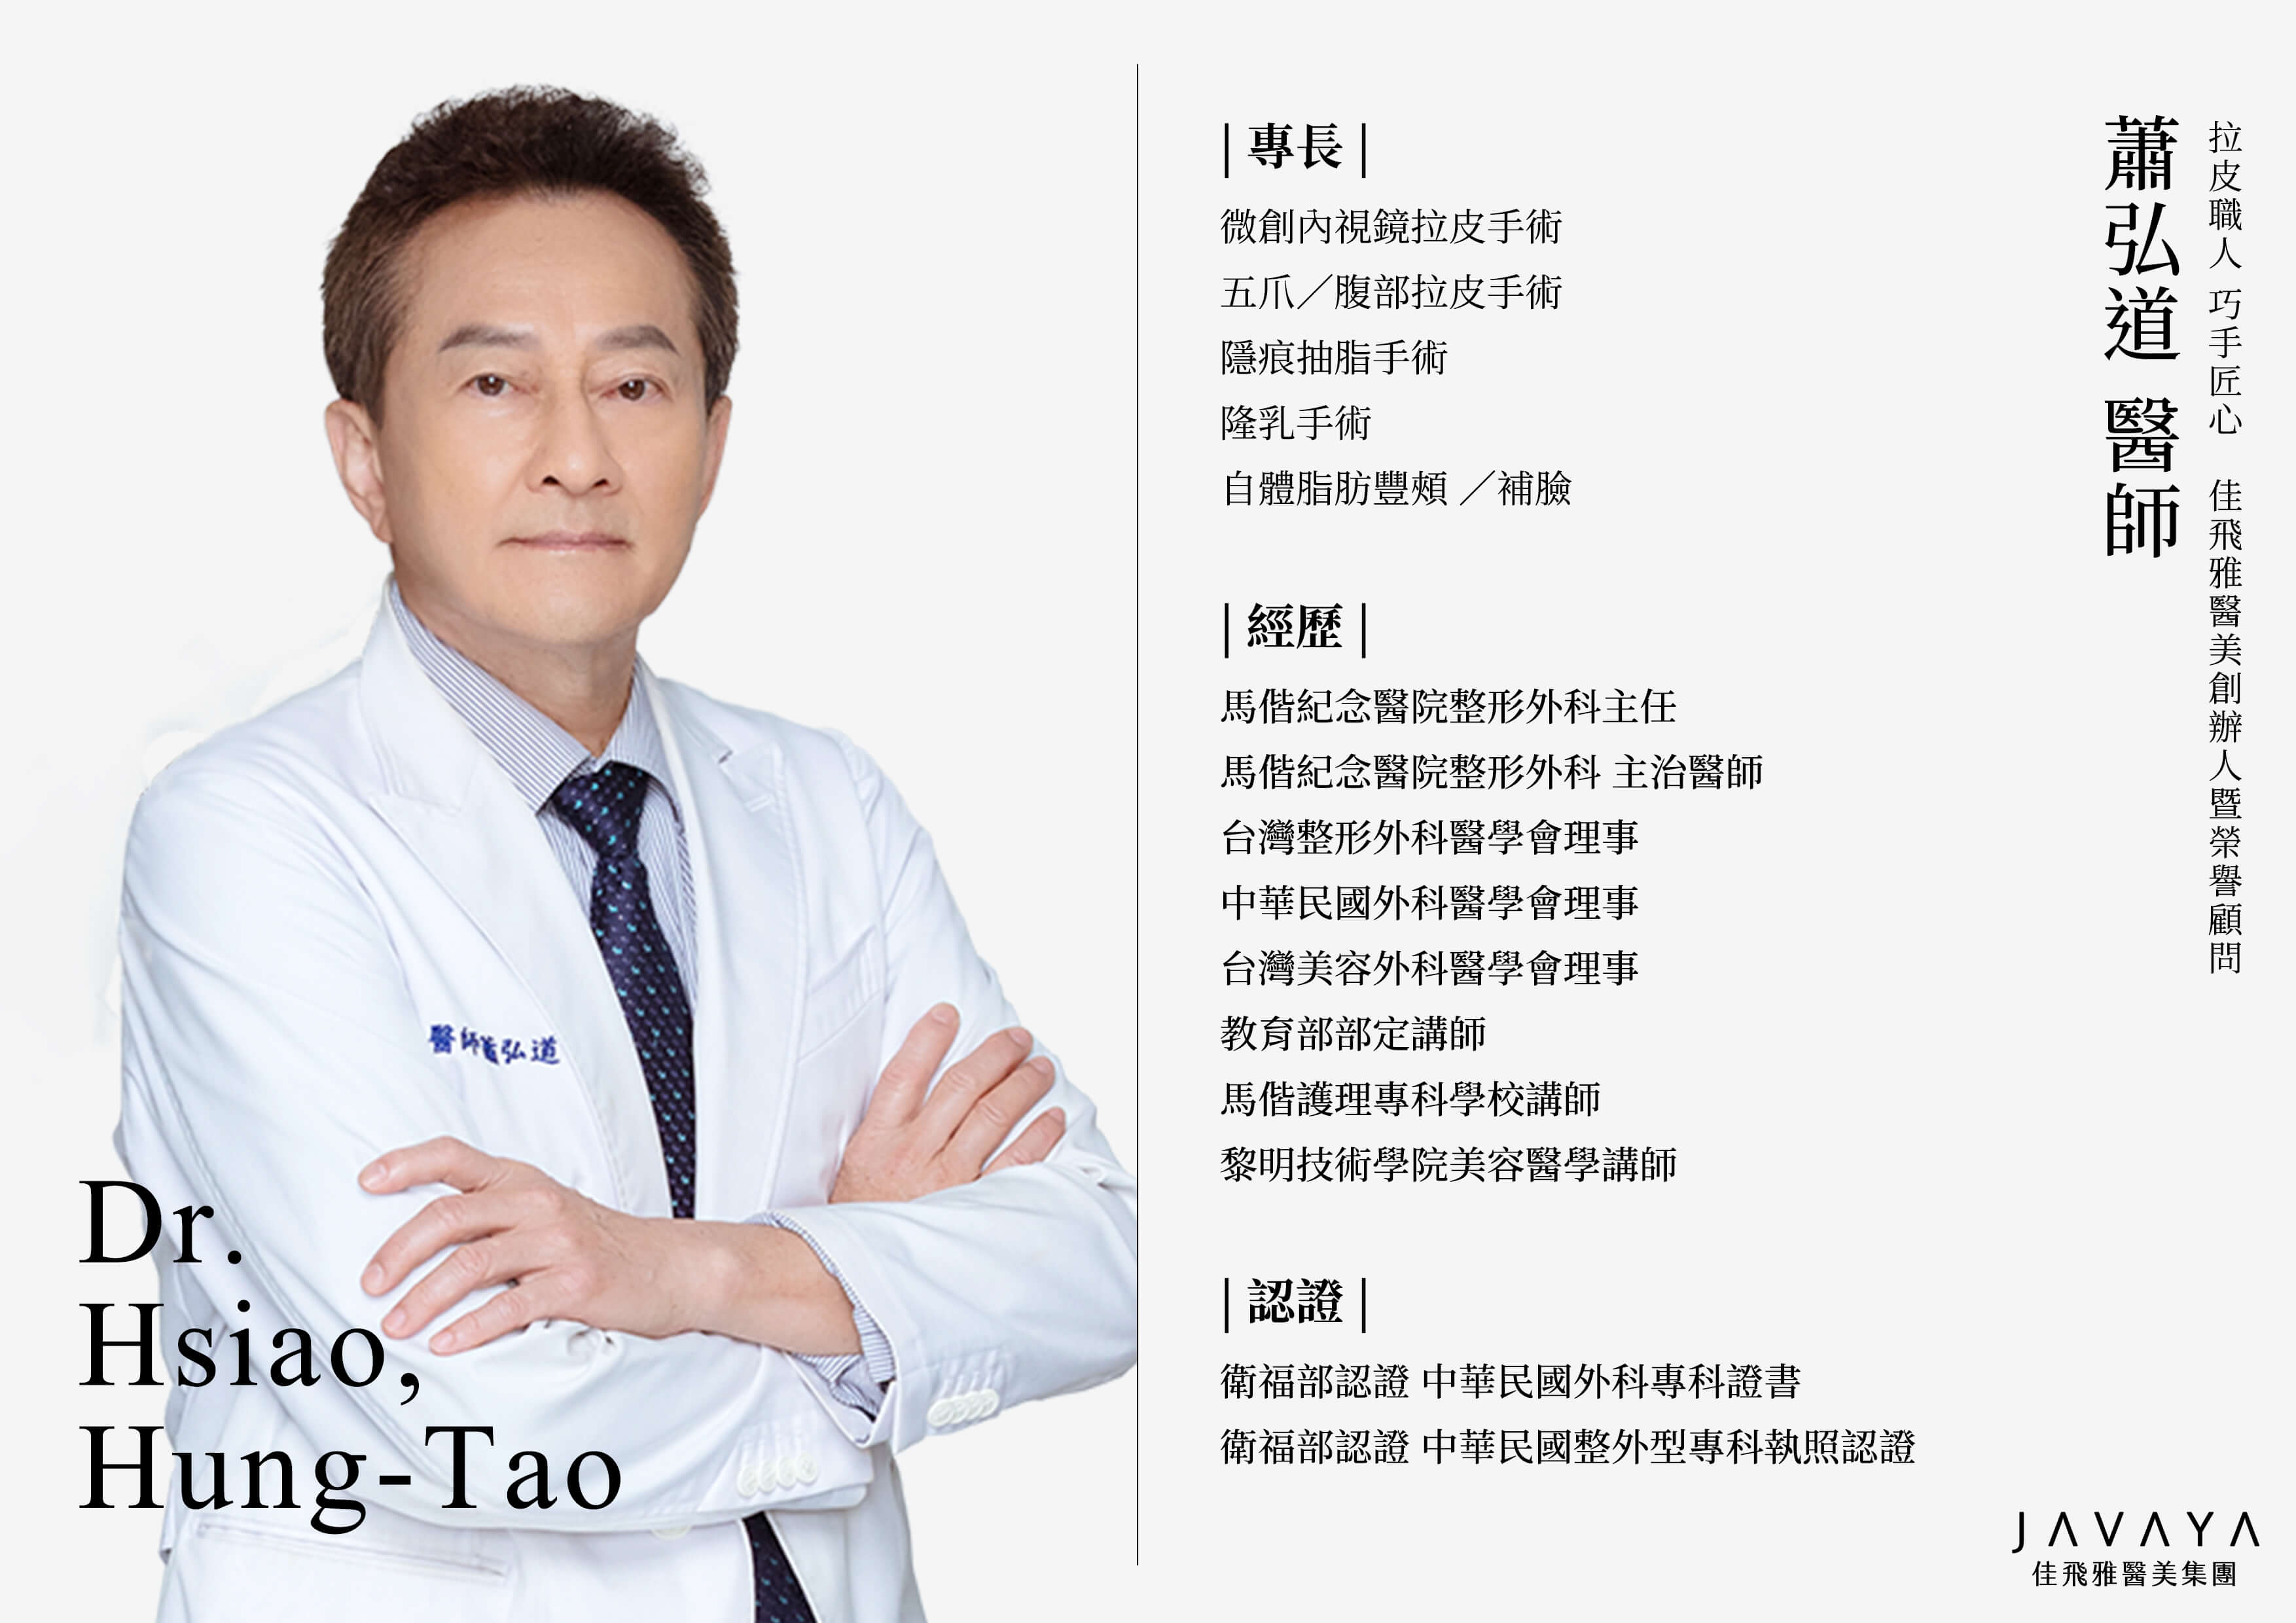 蕭弘道 Hsiao,Hung-Tao 醫師簡介 | 佳飛雅醫美